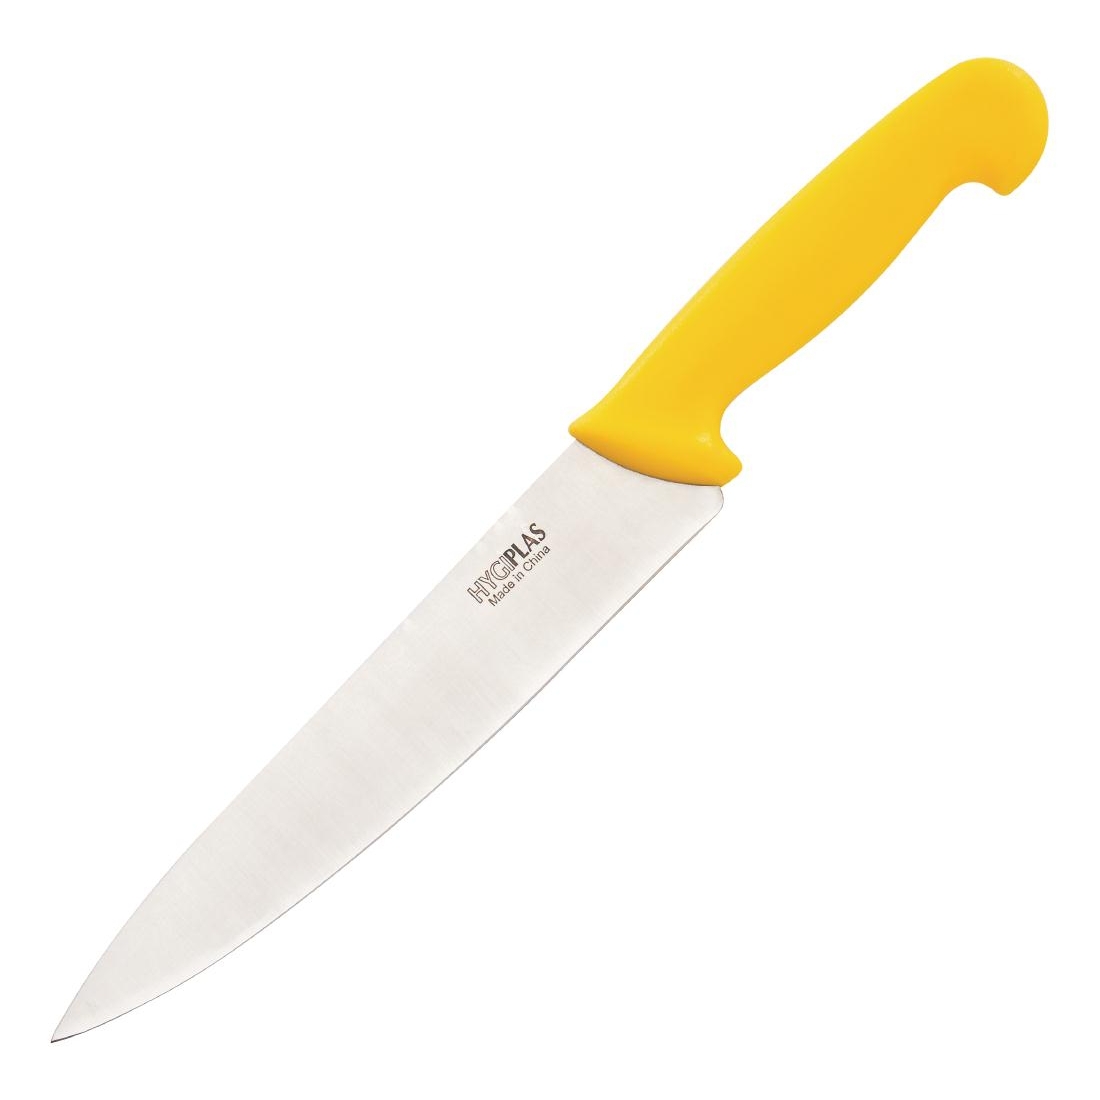 Hygiplas Chefs Knife Yellow 21.5cm